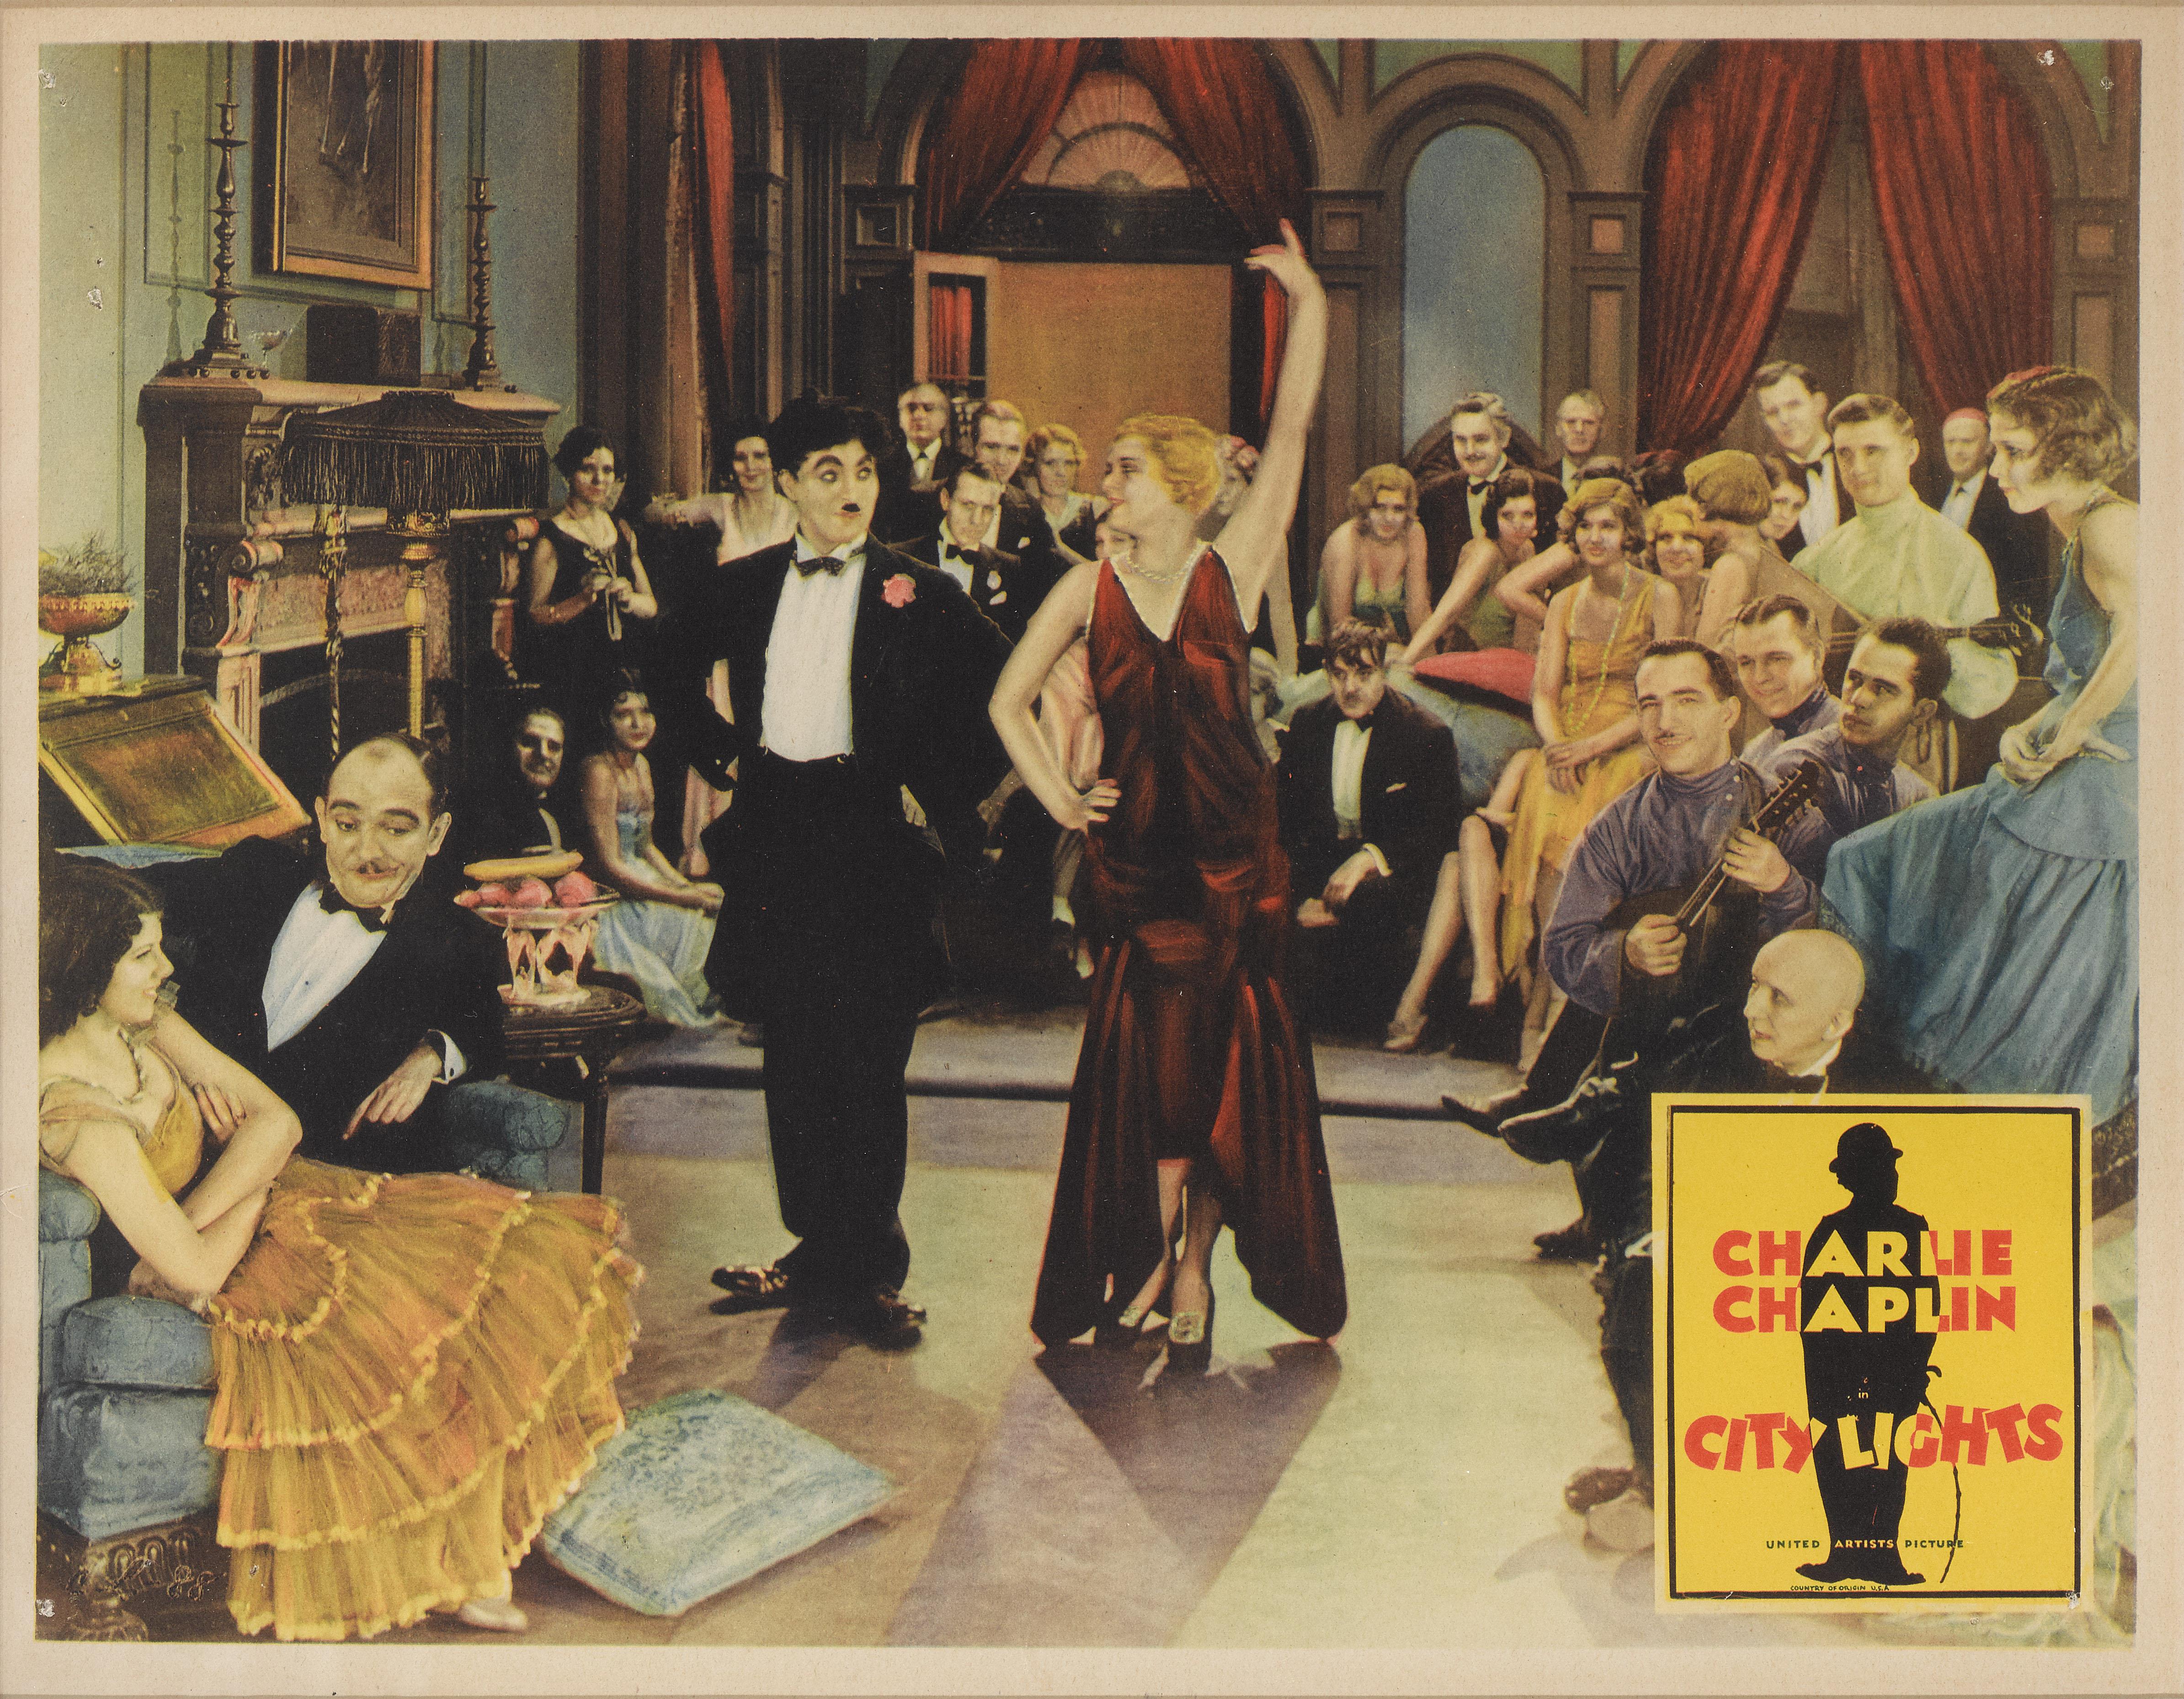 Dies ist eine seltene und begehrte Original-US-Lobbykarte  für einen der größten Filme von Charlie Chaplin. Er wurde 1931 veröffentlicht, als der Ton bereits einige Jahre alt war. Chaplin entschied sich, diesen Film ohne Ton zu drehen, was dem